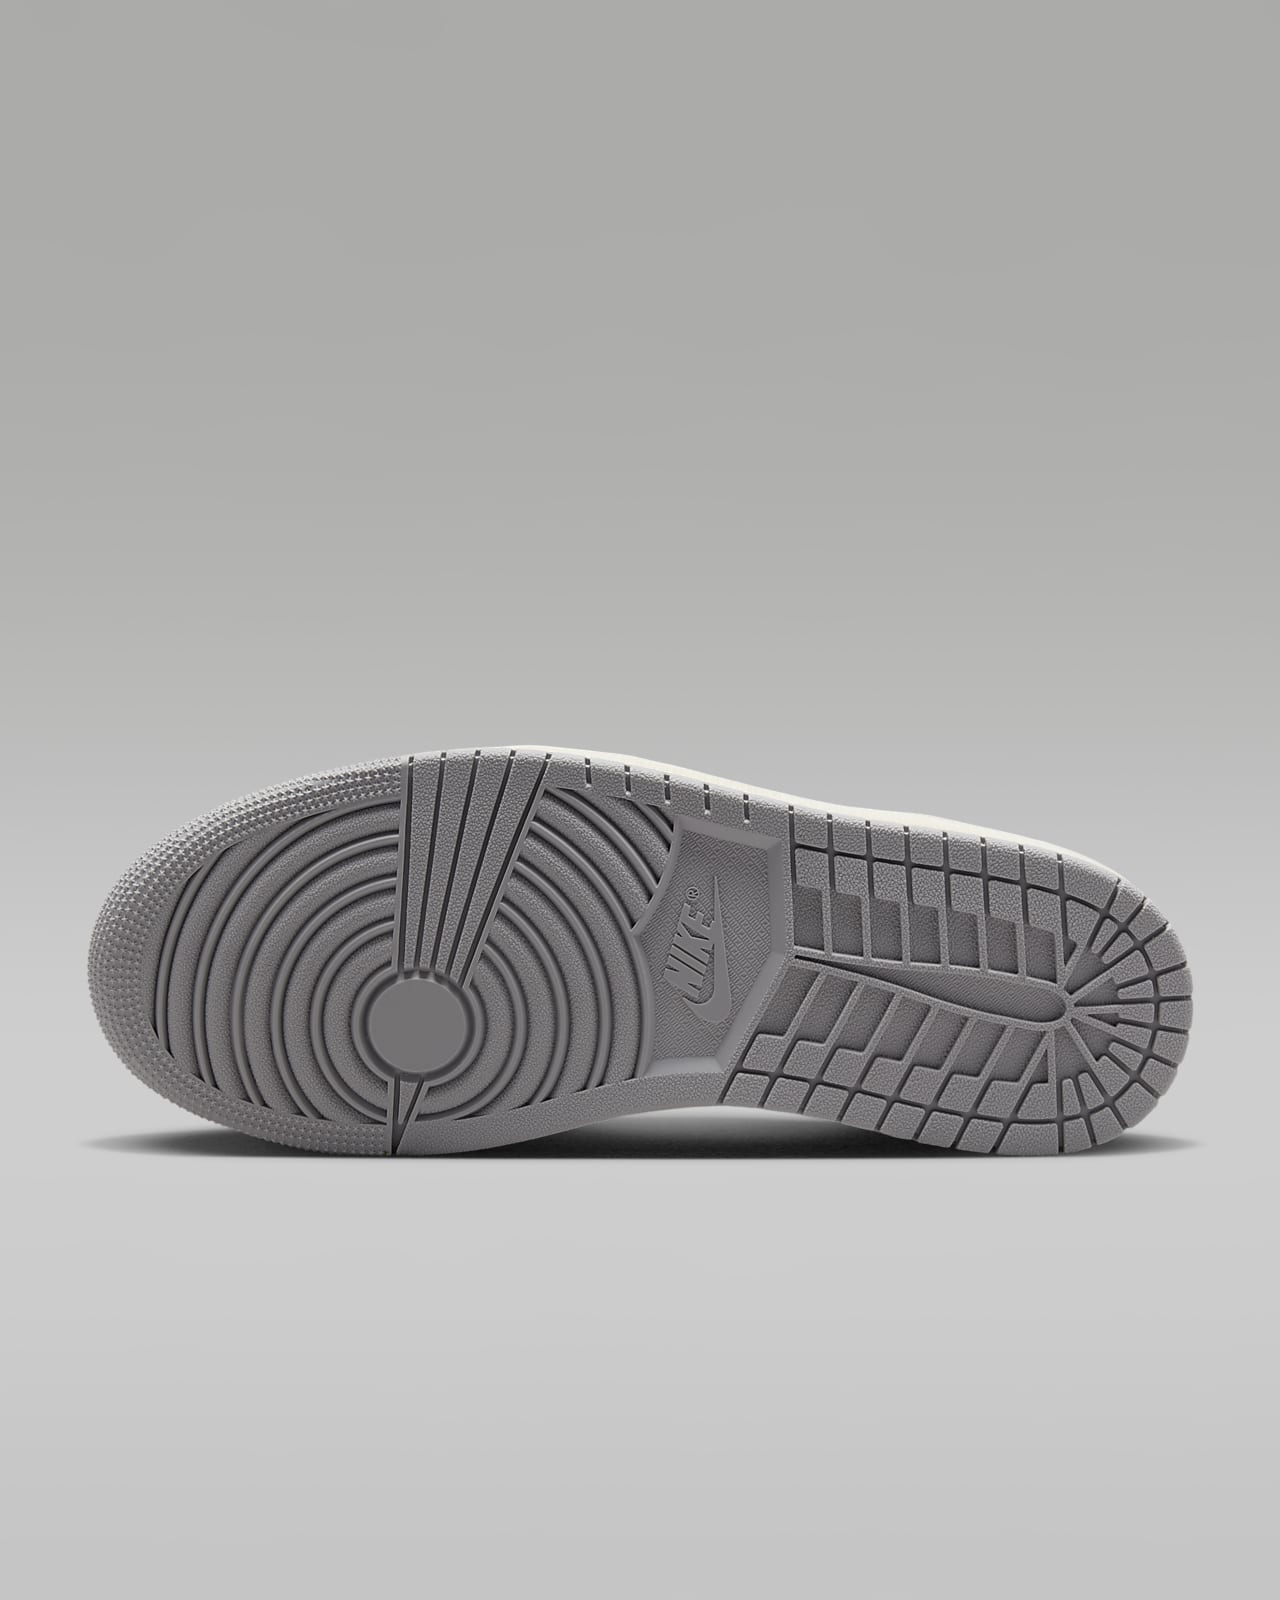 Air Jordan 1 Low OG Shoes. Nike LU